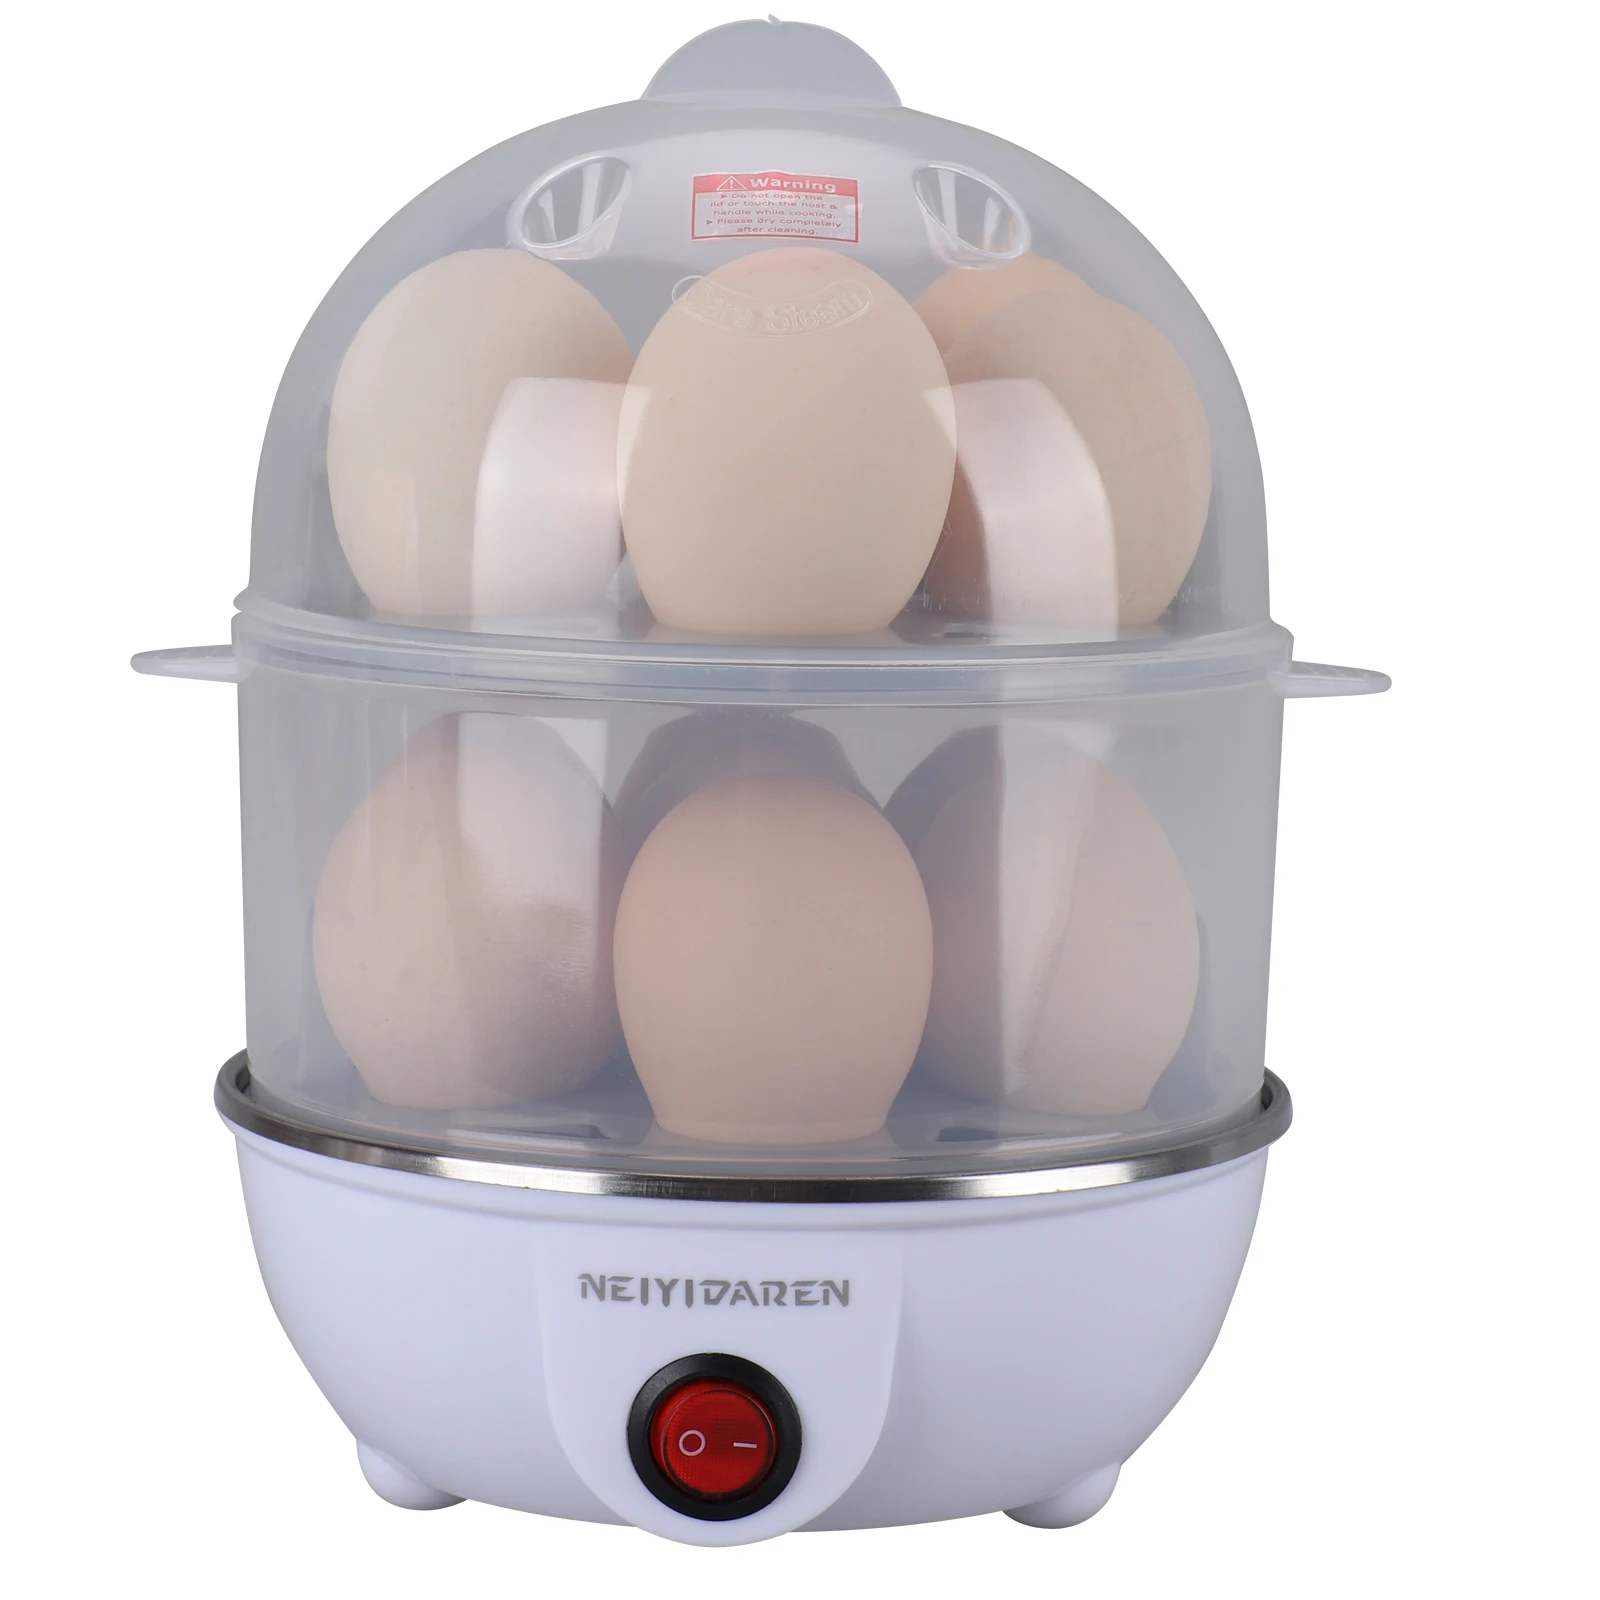 Бытовая кухонная техника, бытовая портативная автоматическая мини-печь для яиц, электрическая пластиковая Пароварка для кипячения яиц